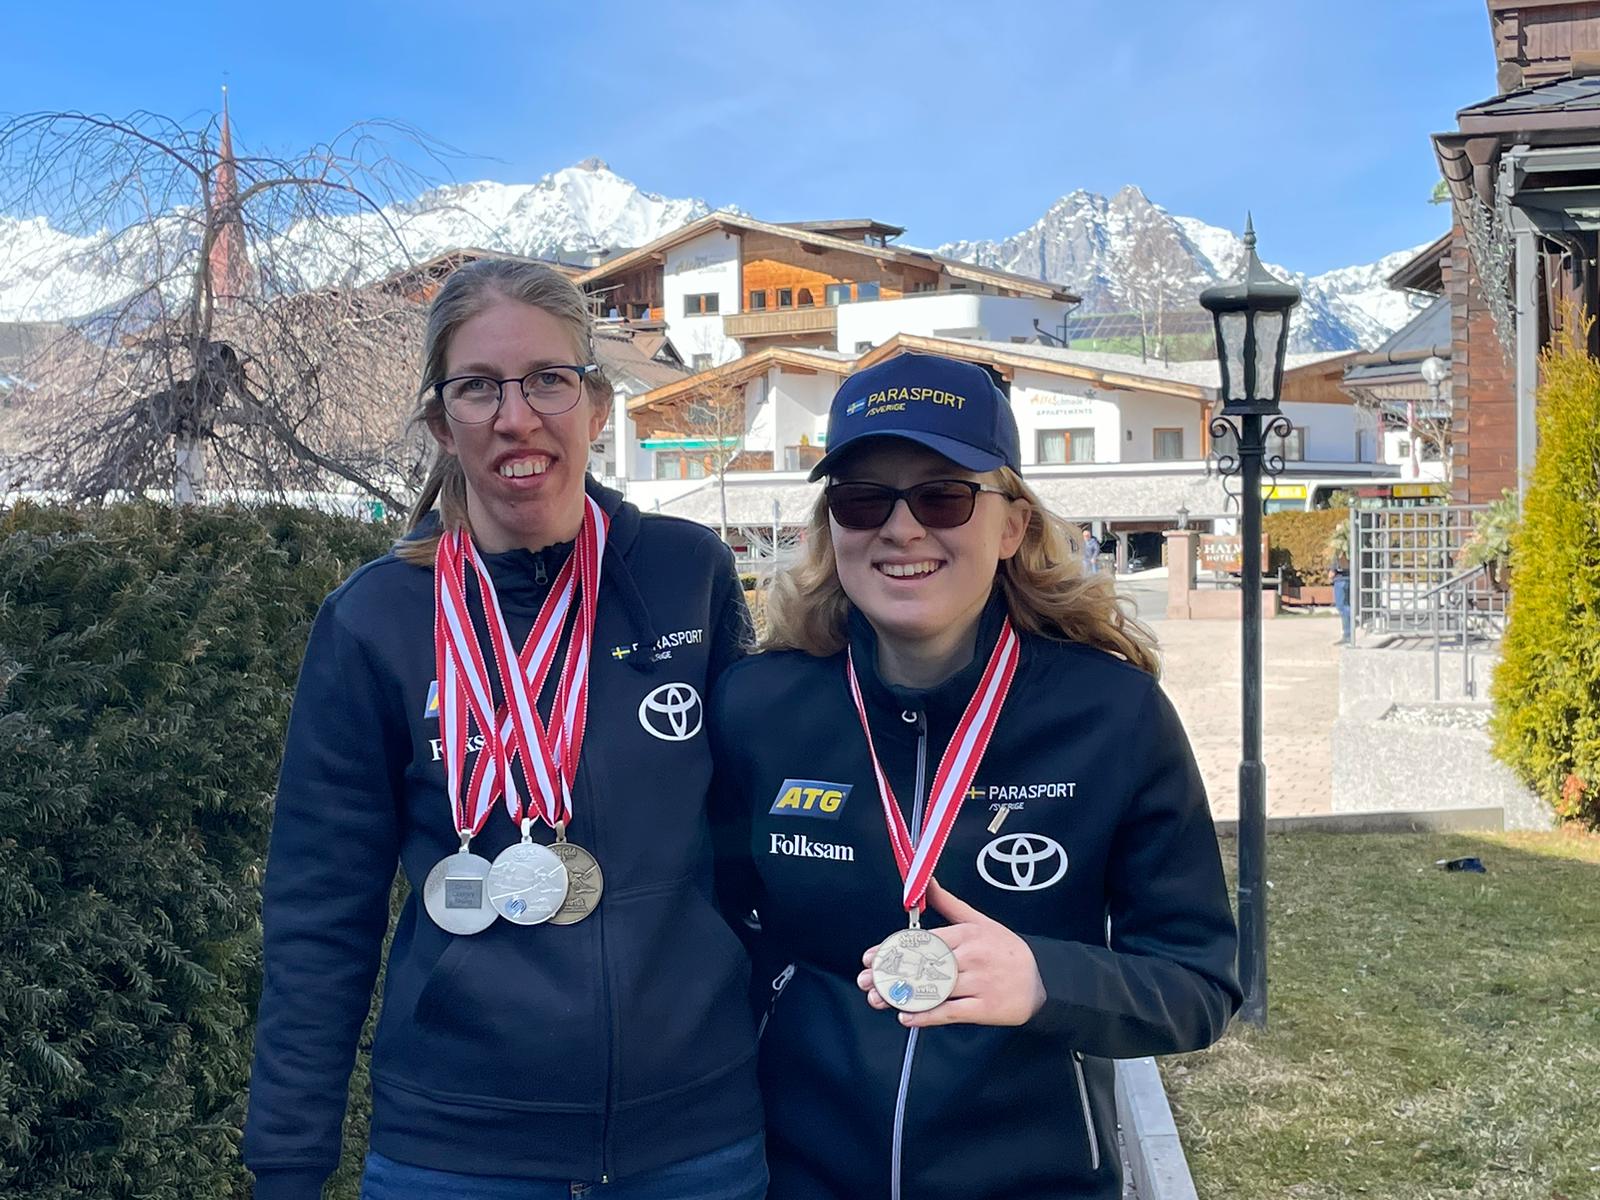 Kristin Björfeldt, längd, och Elmie Gerhardsson Danielsson, alpint, visar upp sina medaljer från skid-VM i Österrike. Bakom Elmie och Kristin syns buskar, ett hus och alptopper.